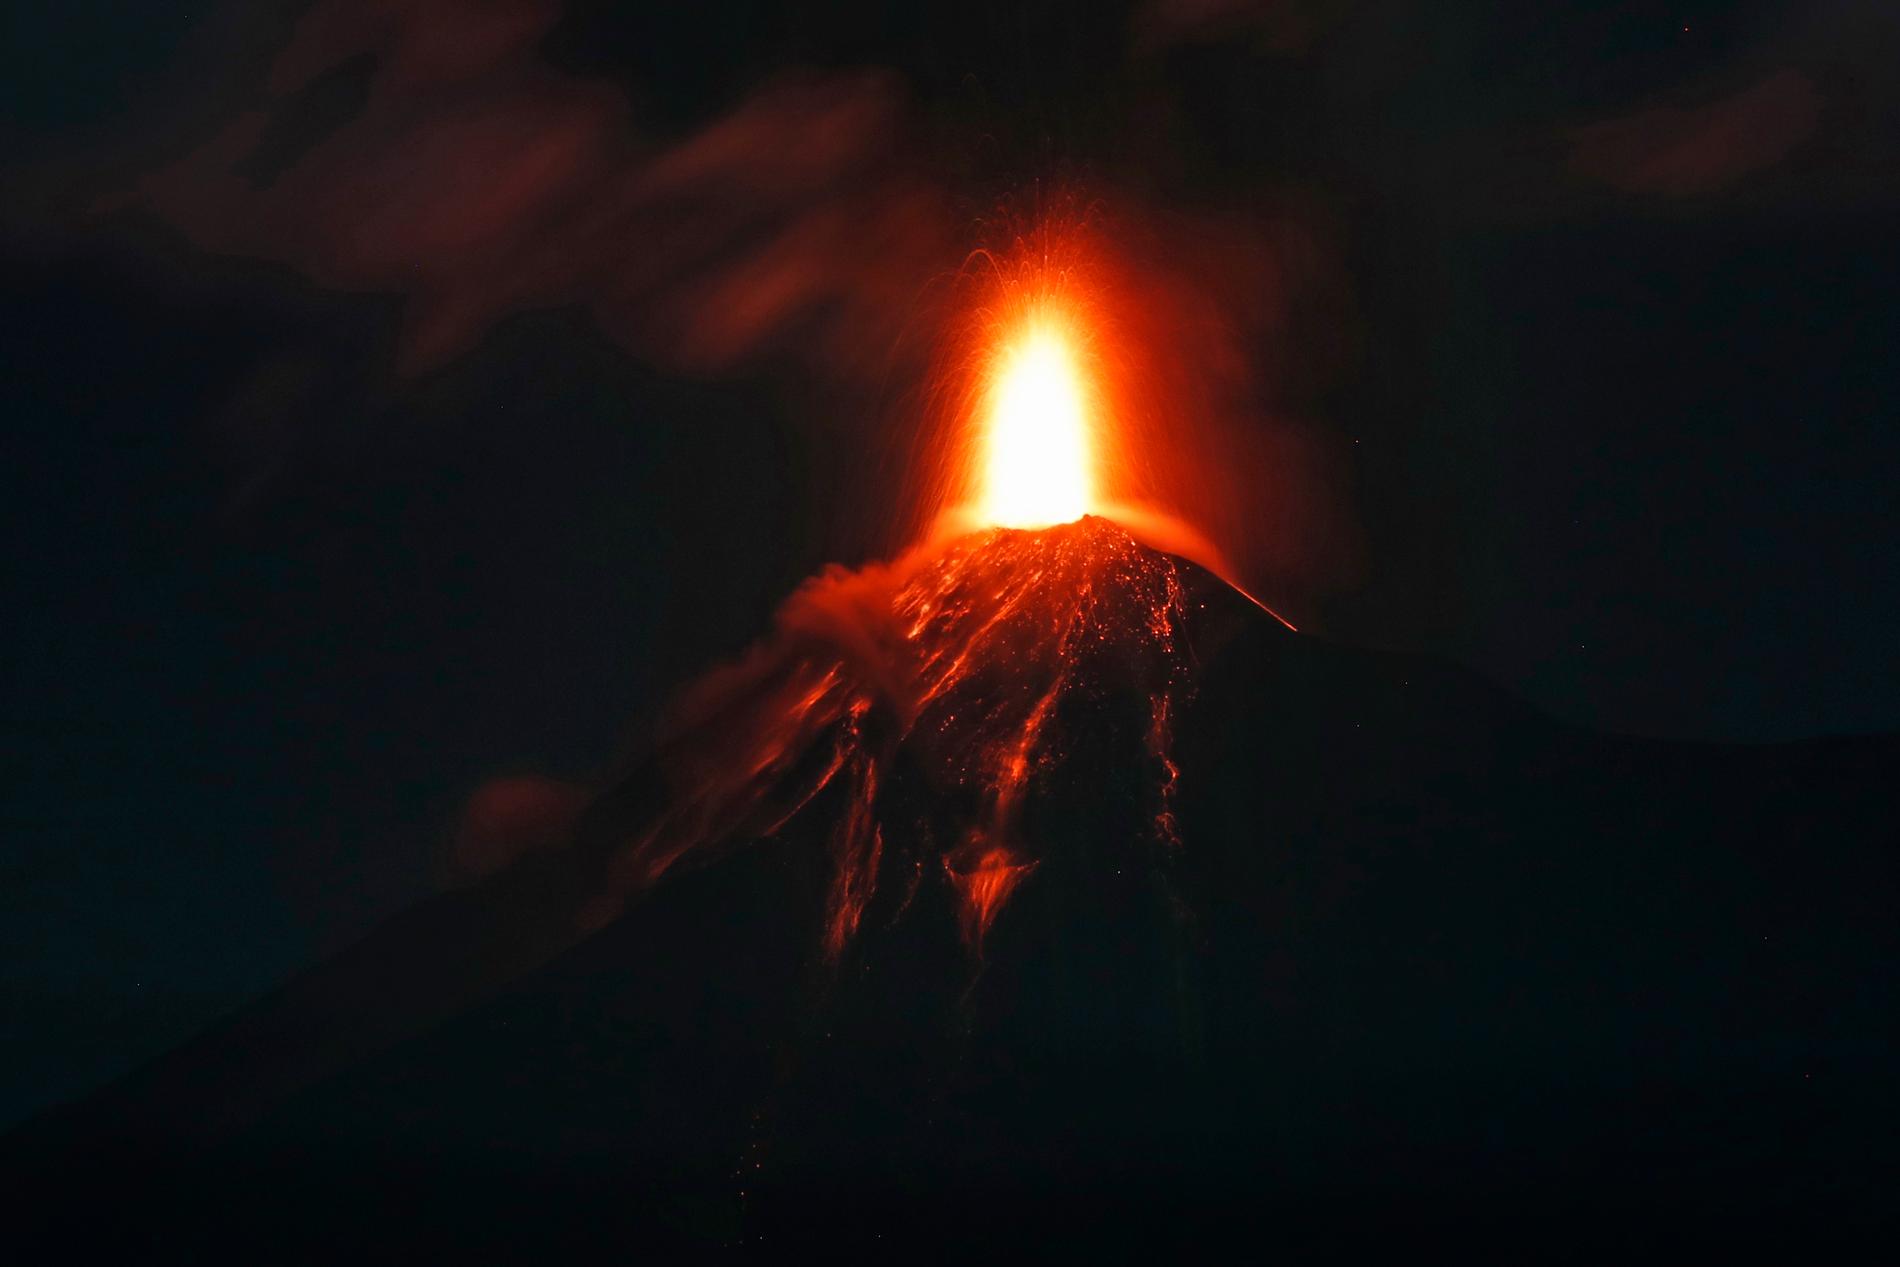 Volcán de Fuego, "Eldvulkanen", har fått ytterligare ett utbrott.